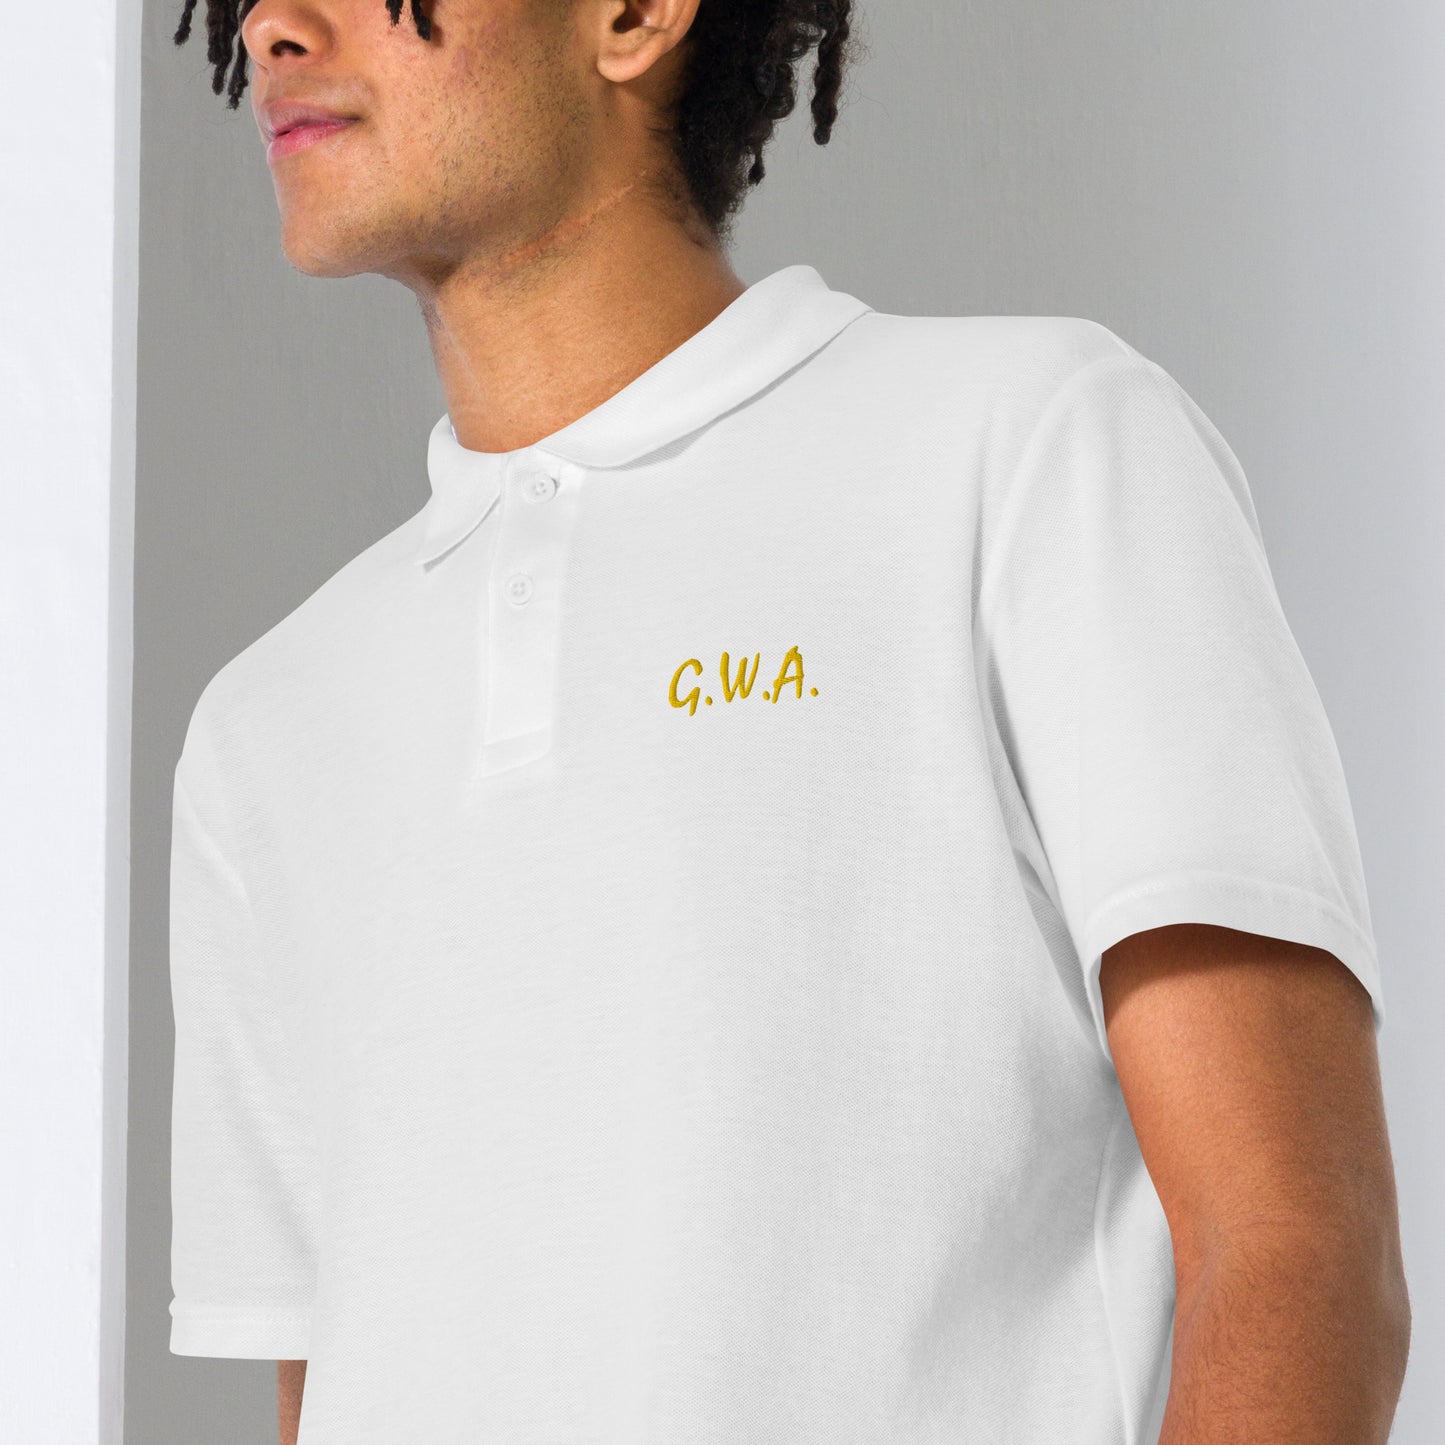 GWA 3 Unisex pique polo shirt